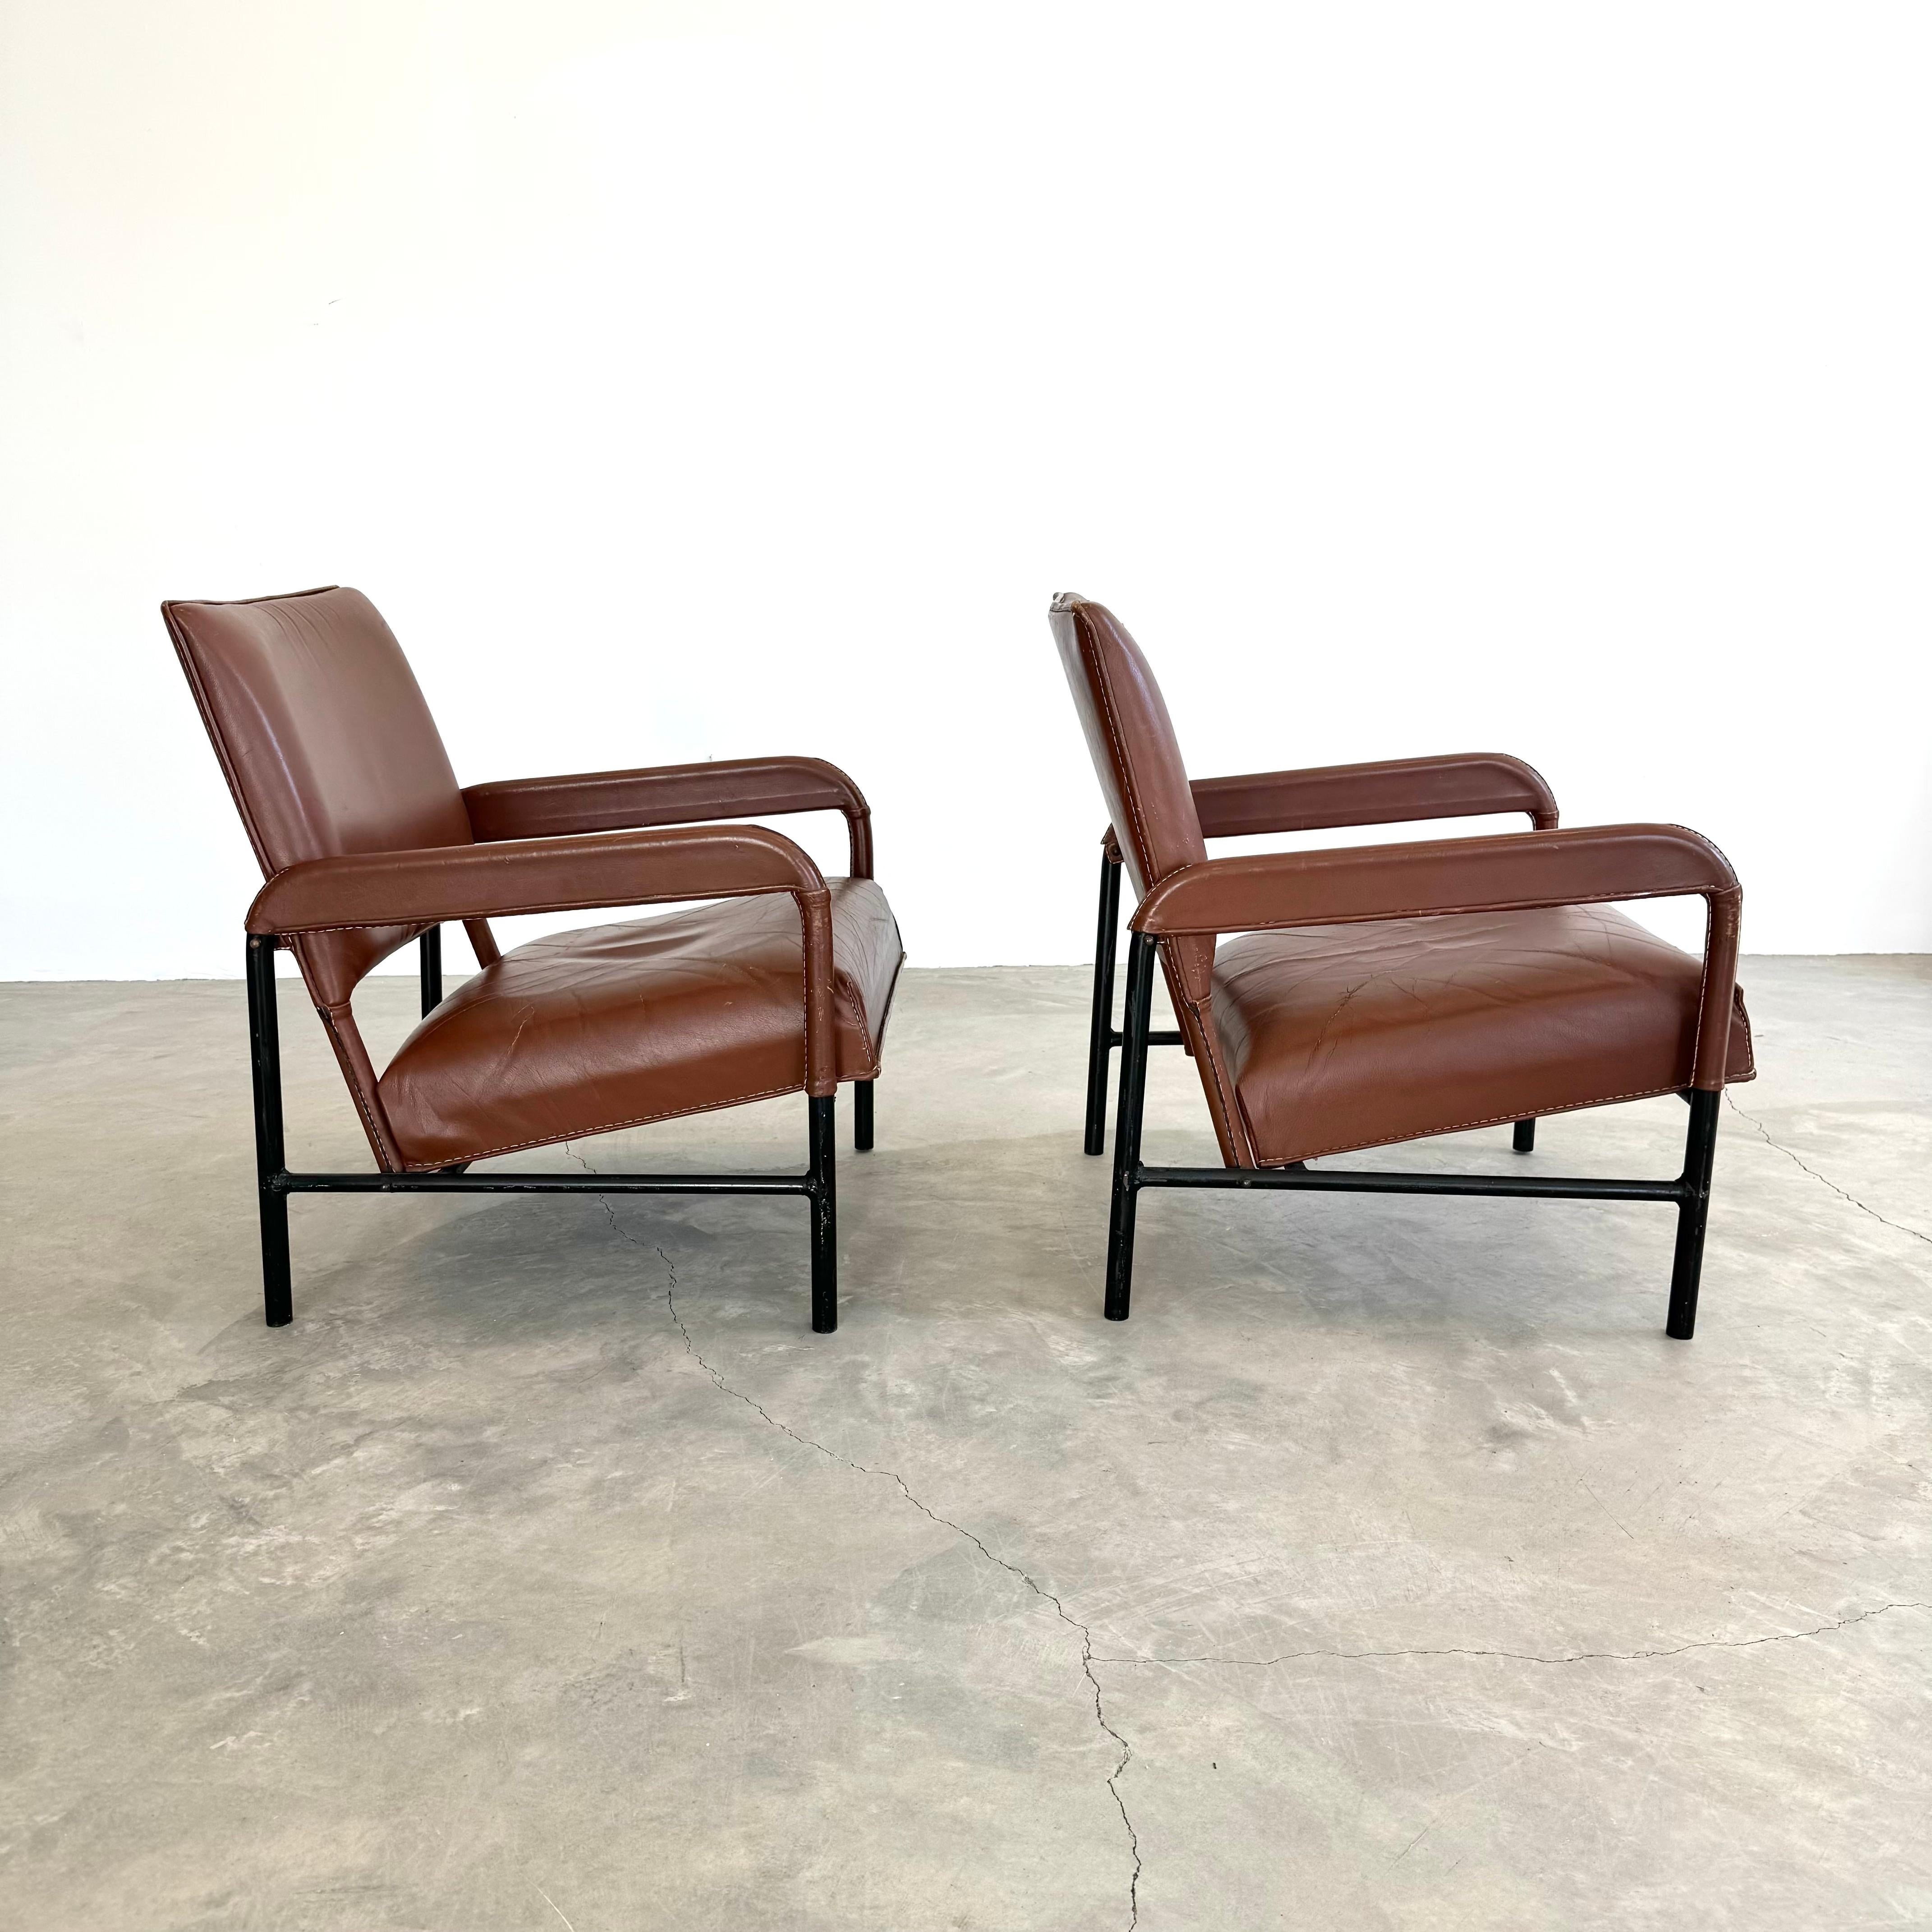 Importante paire de fauteuils du designer français Jacques Adnet. Le cadre en fer tubulaire lourd constitue un siège solide et bien ancré. Cuir de selle cognac avec surpiqûres contrastées signées Adnet. Assise en cuir épais et dossier en cuir